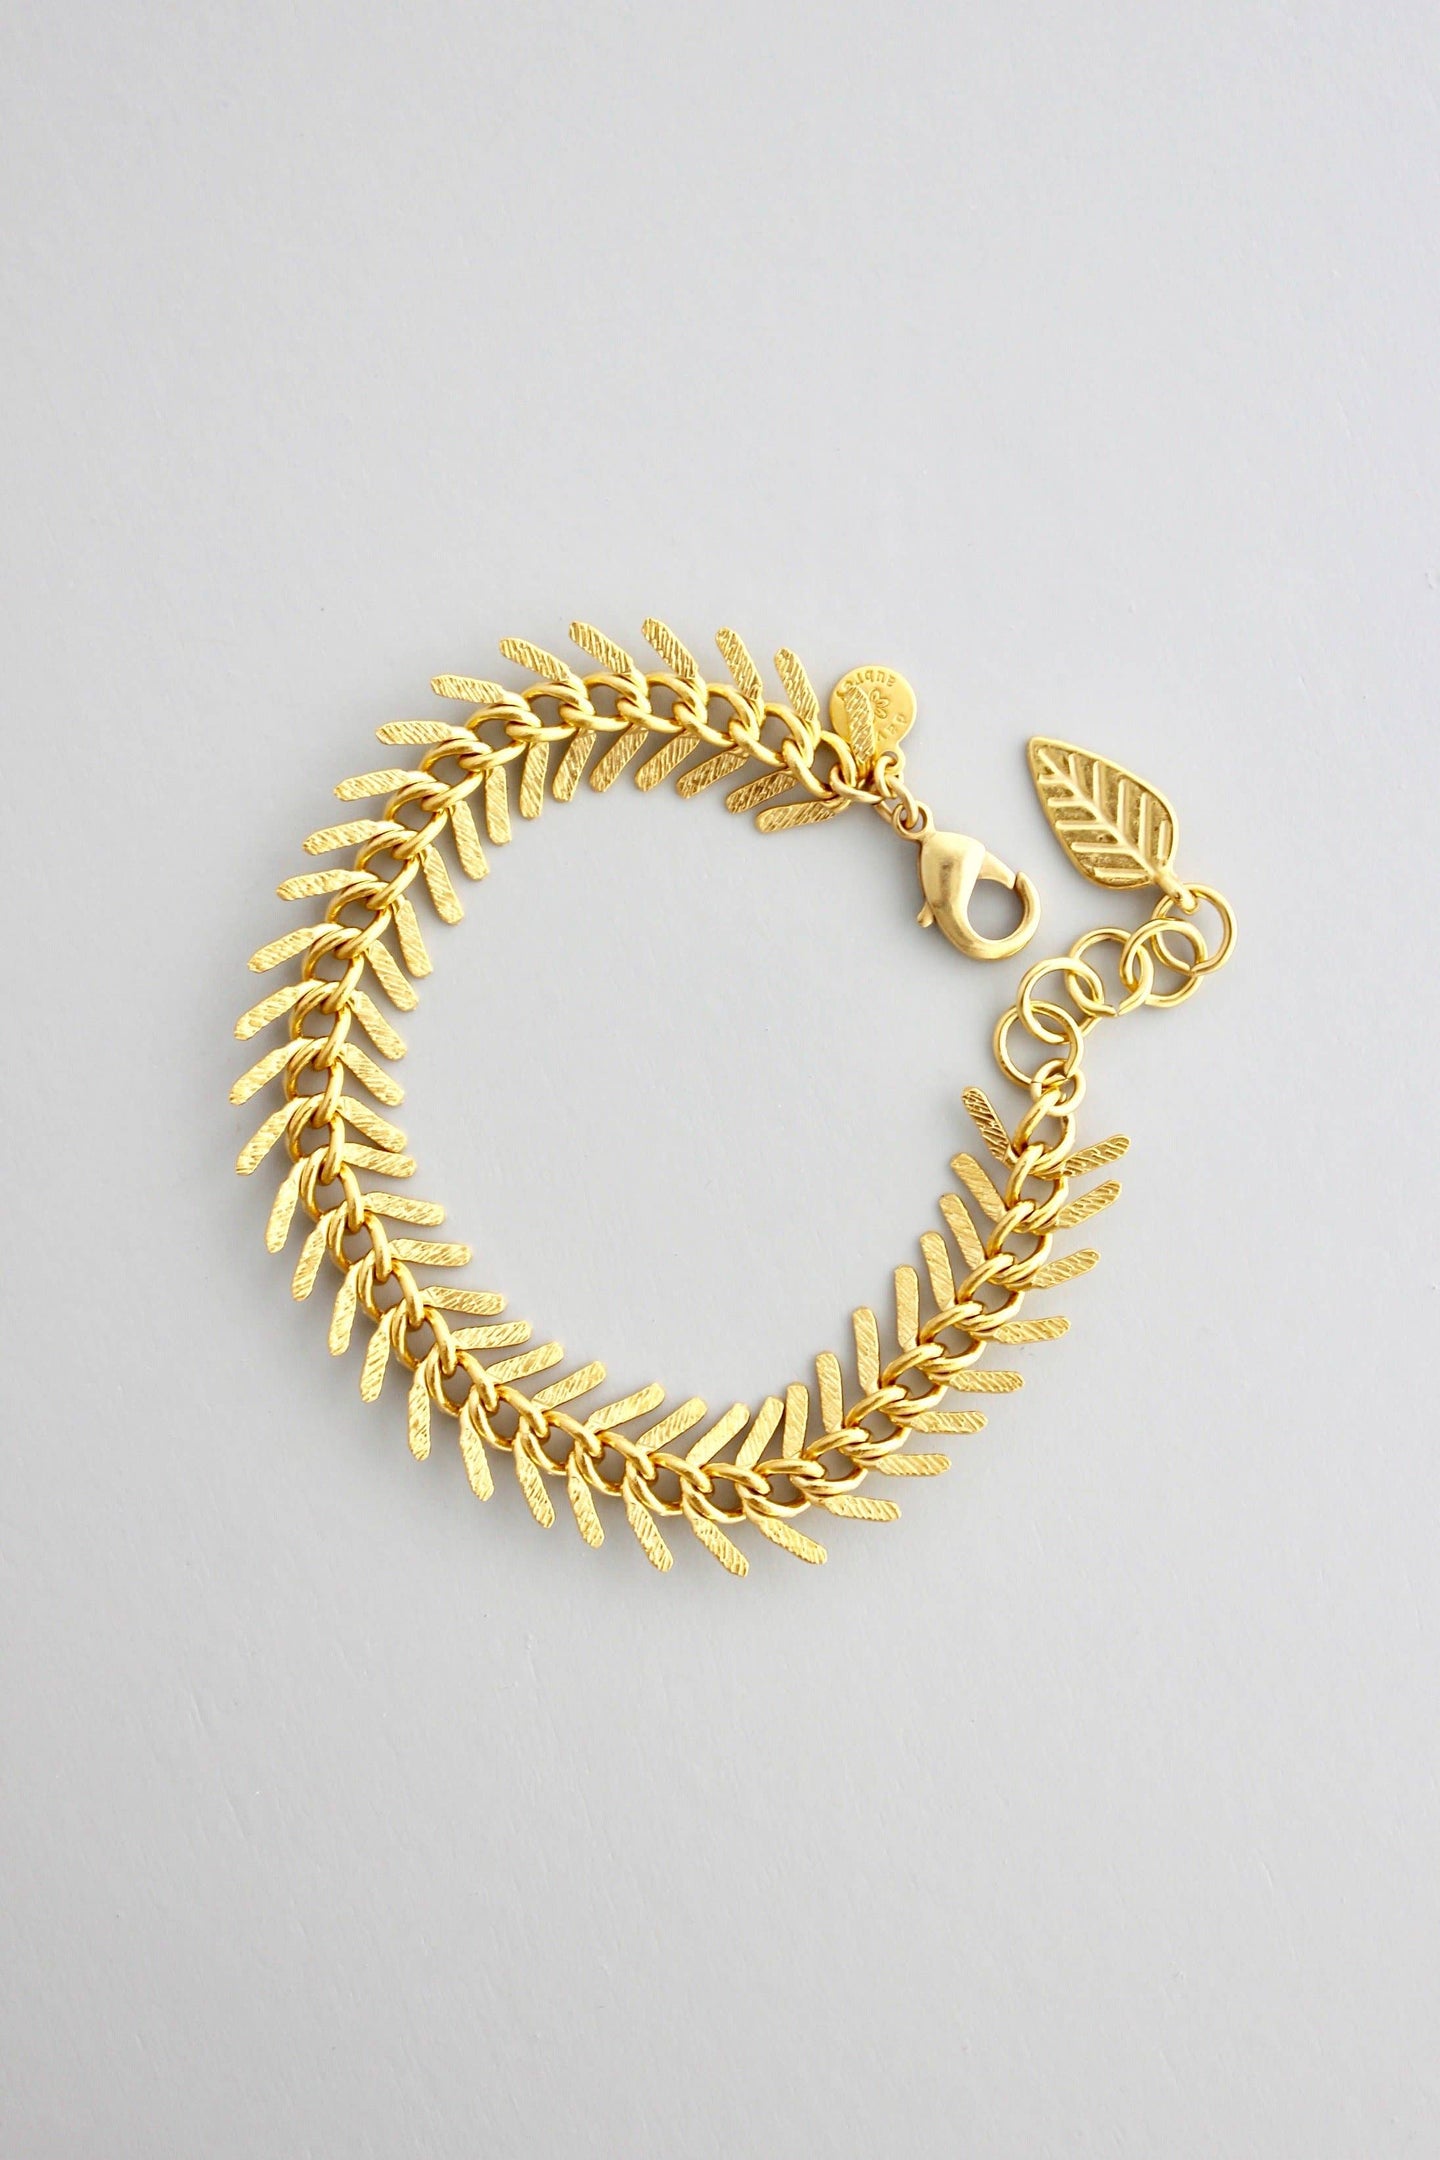 David Aubrey Jewelry - DORB02 Gold Chain Fish Bone Bracelet